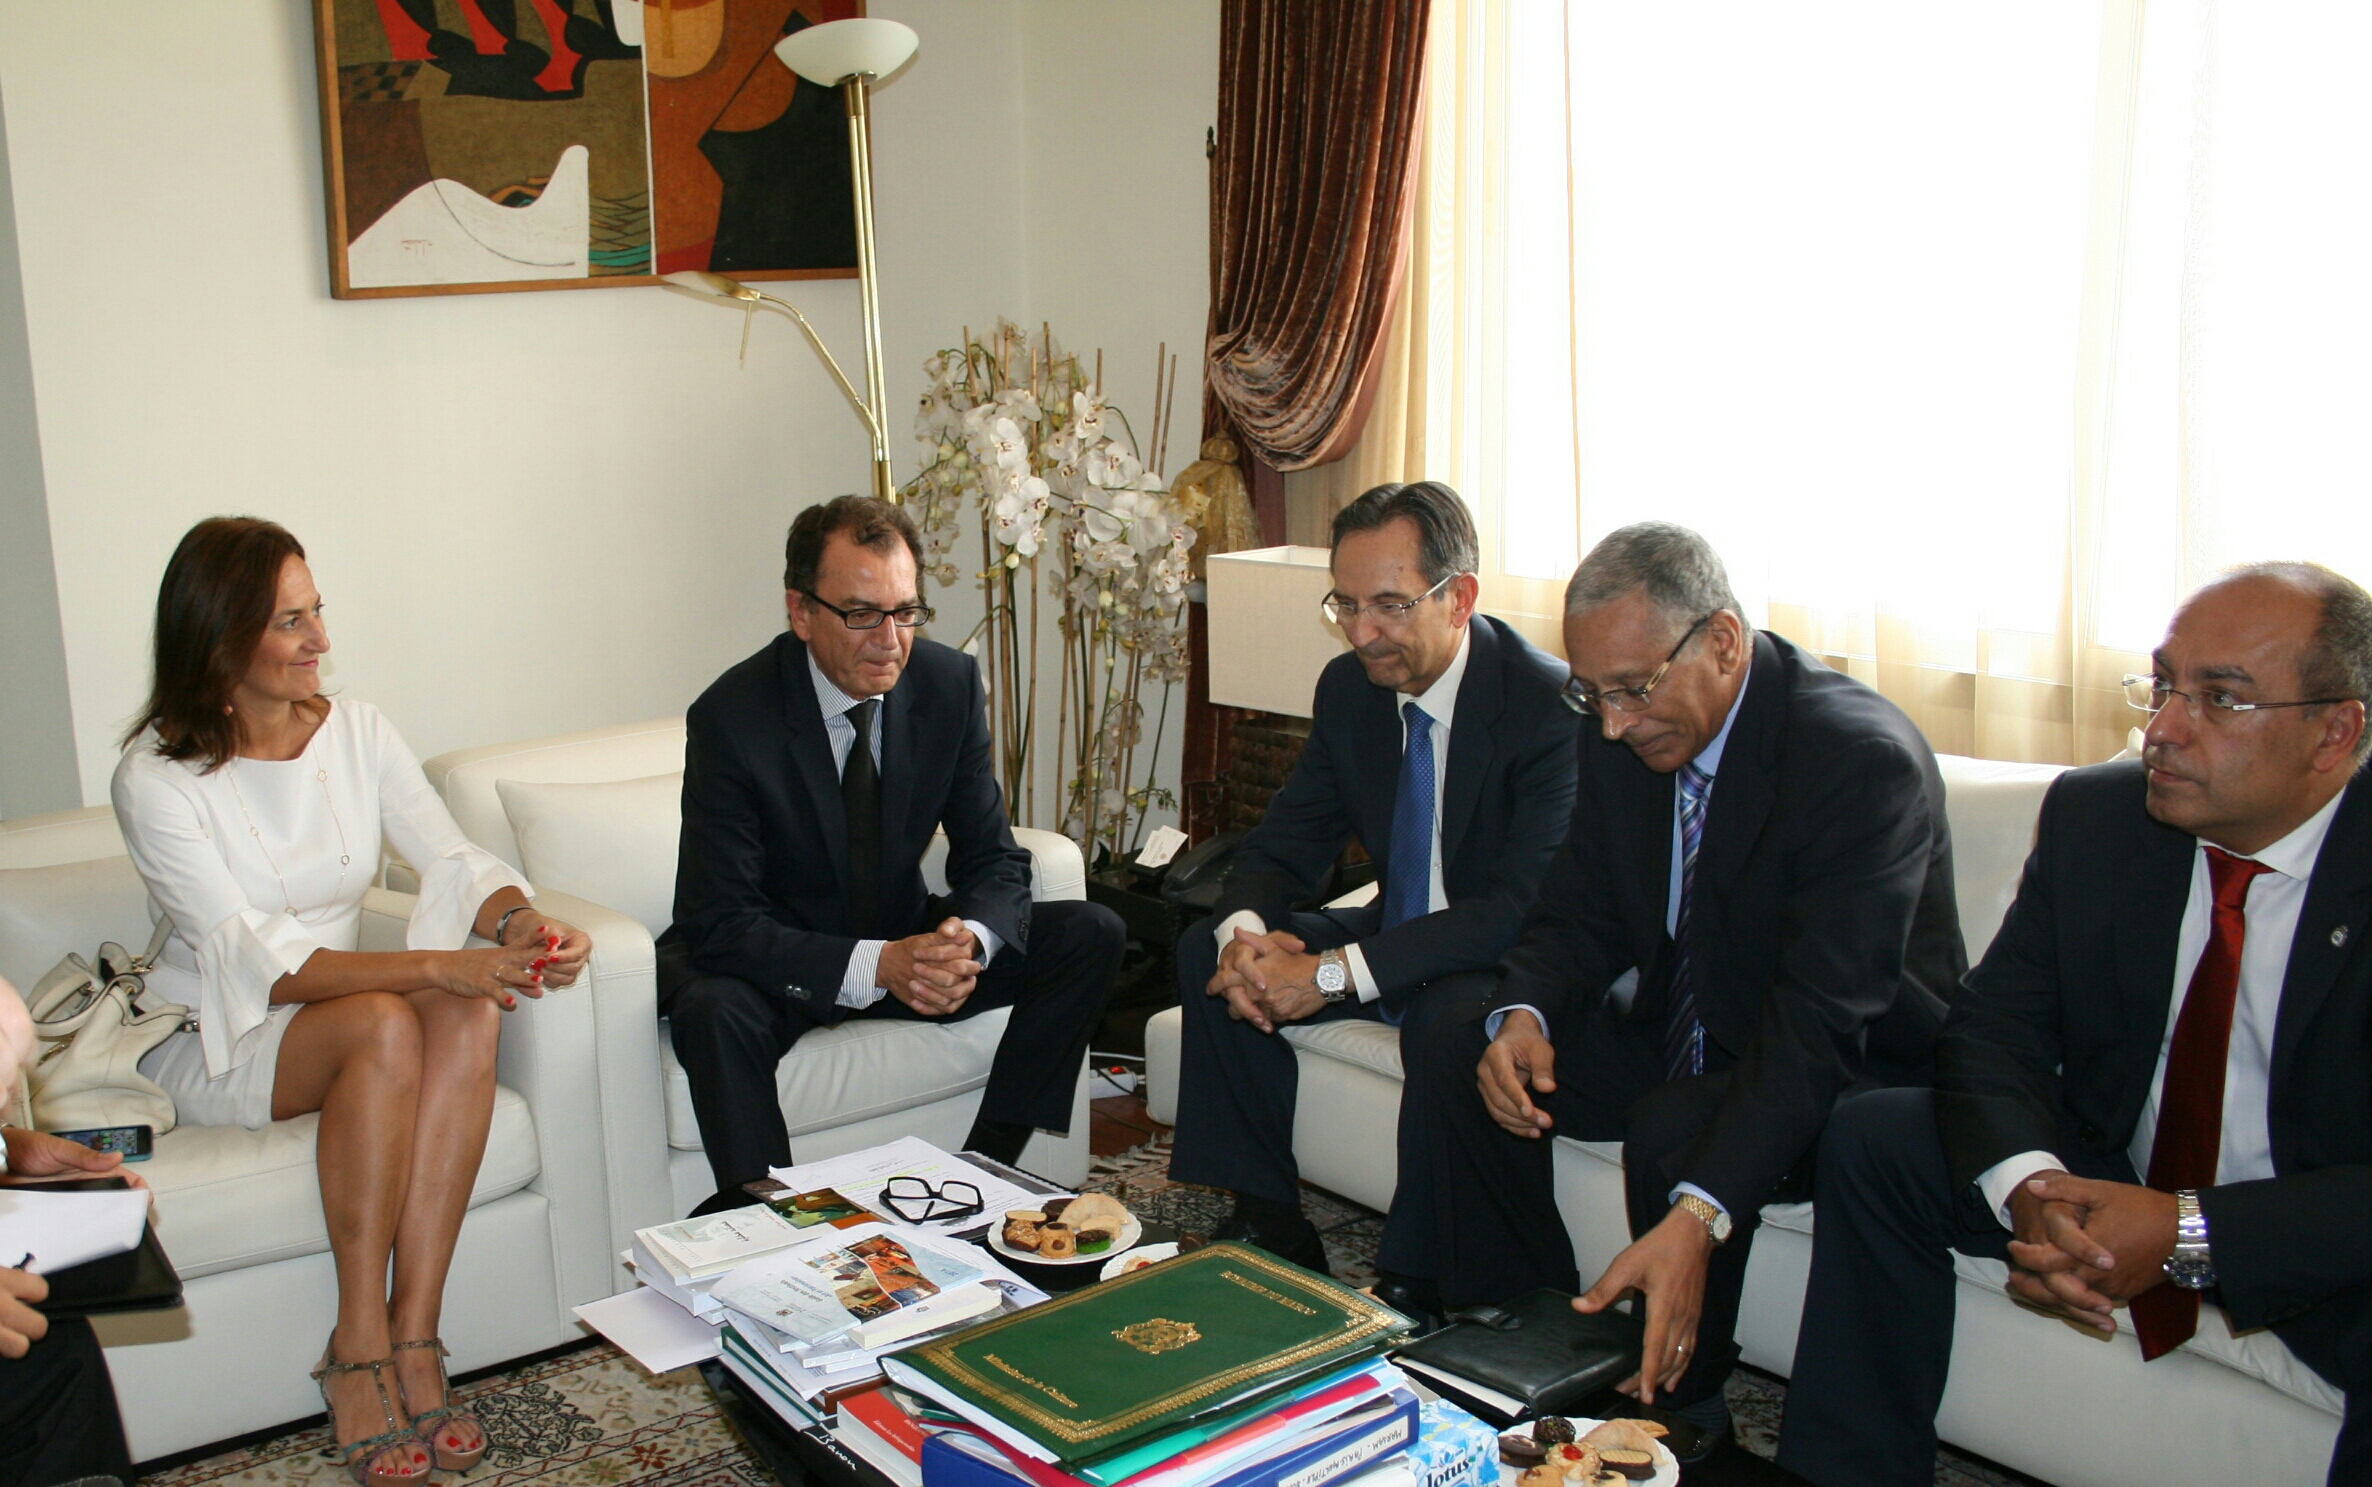 eunión de la delegación parlamentaria canaria con el Ministro de Cultura marroquí.